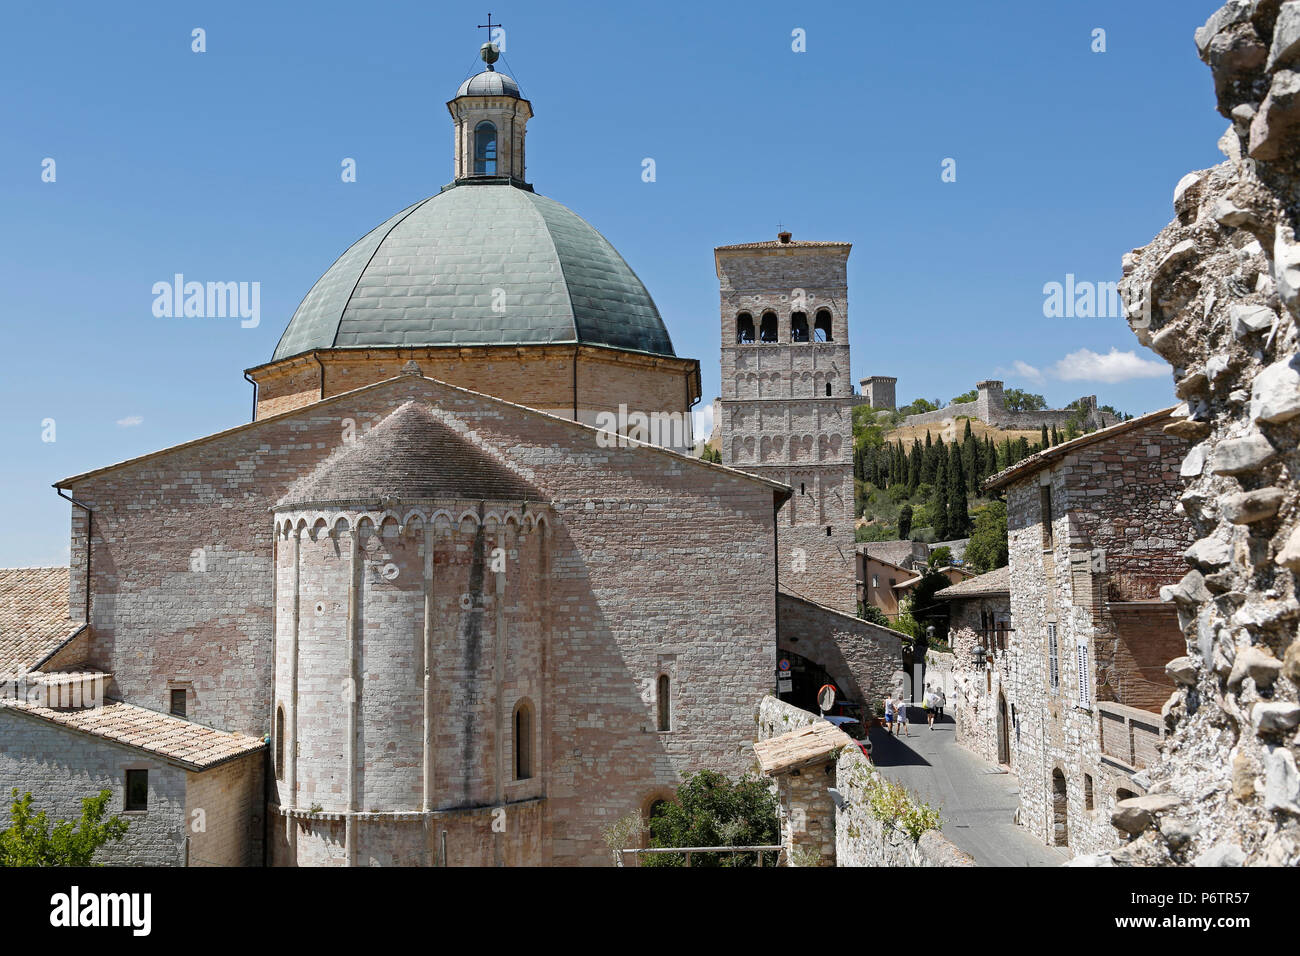 La Cattedrale di San Rufino da dietro, Assisi, Umbria, Italia, Europa, Assisi, Umbria, Italia, Europa Foto Stock